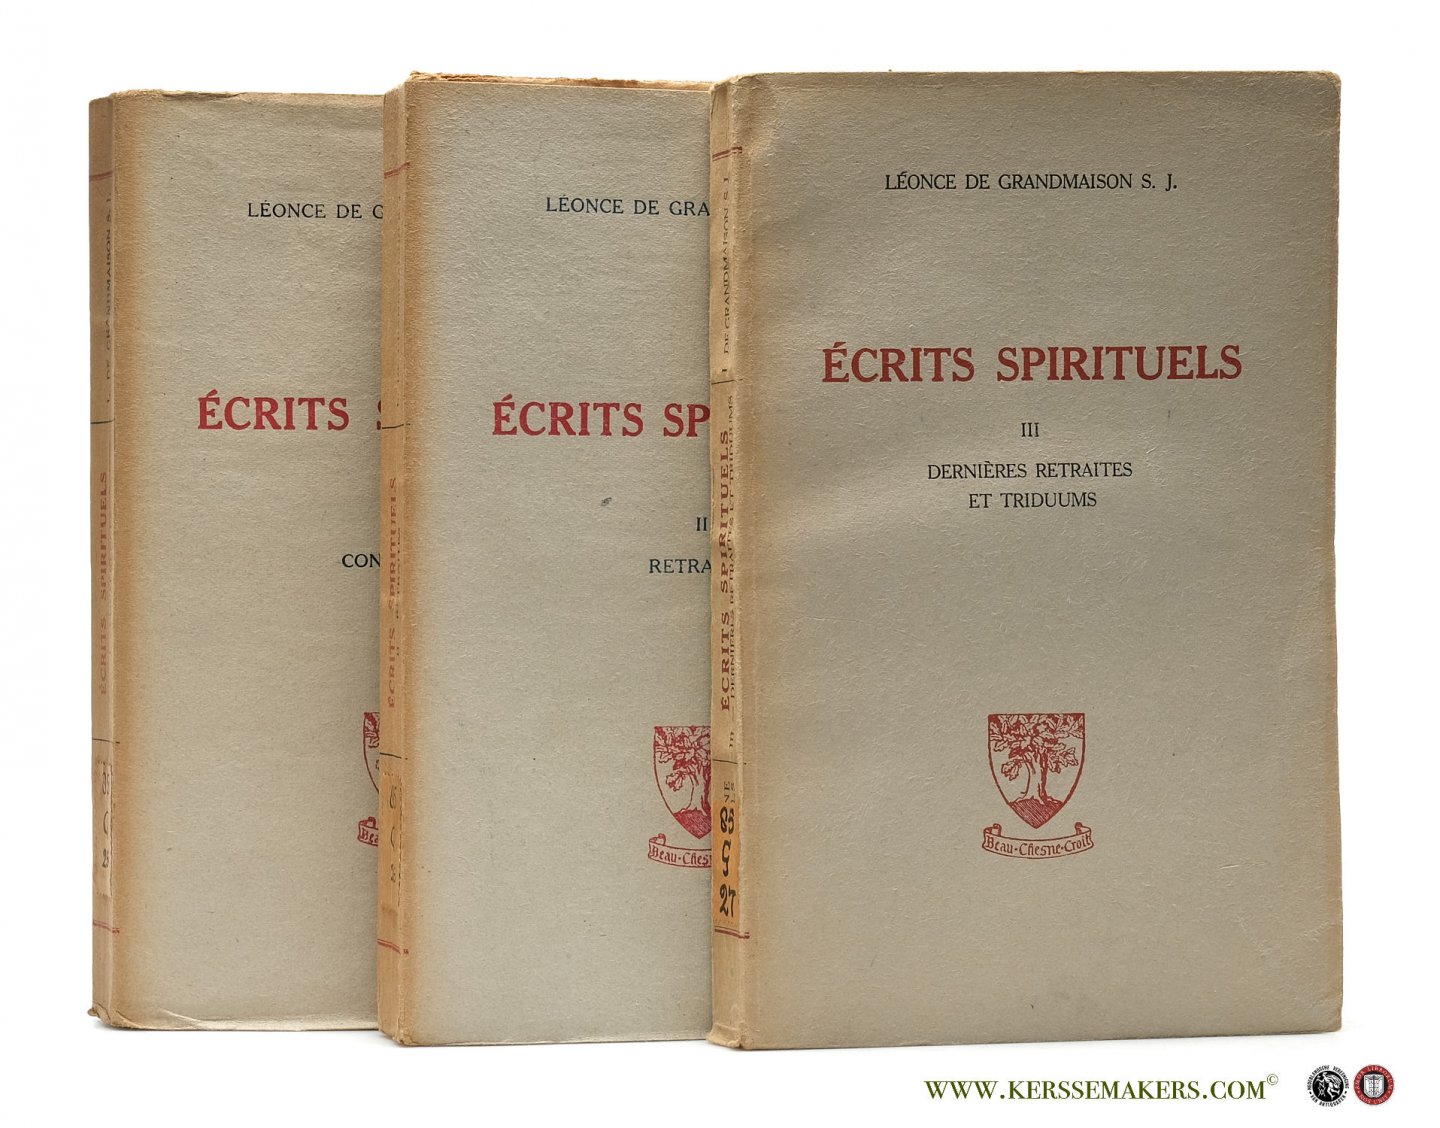 Grandmaison, R. P. Léonce de. - Écrits spirituels [ 3 volumes ]. I. Conférences II. Retraites III. Dernières retraites et triduums. Vingt et unième edition.